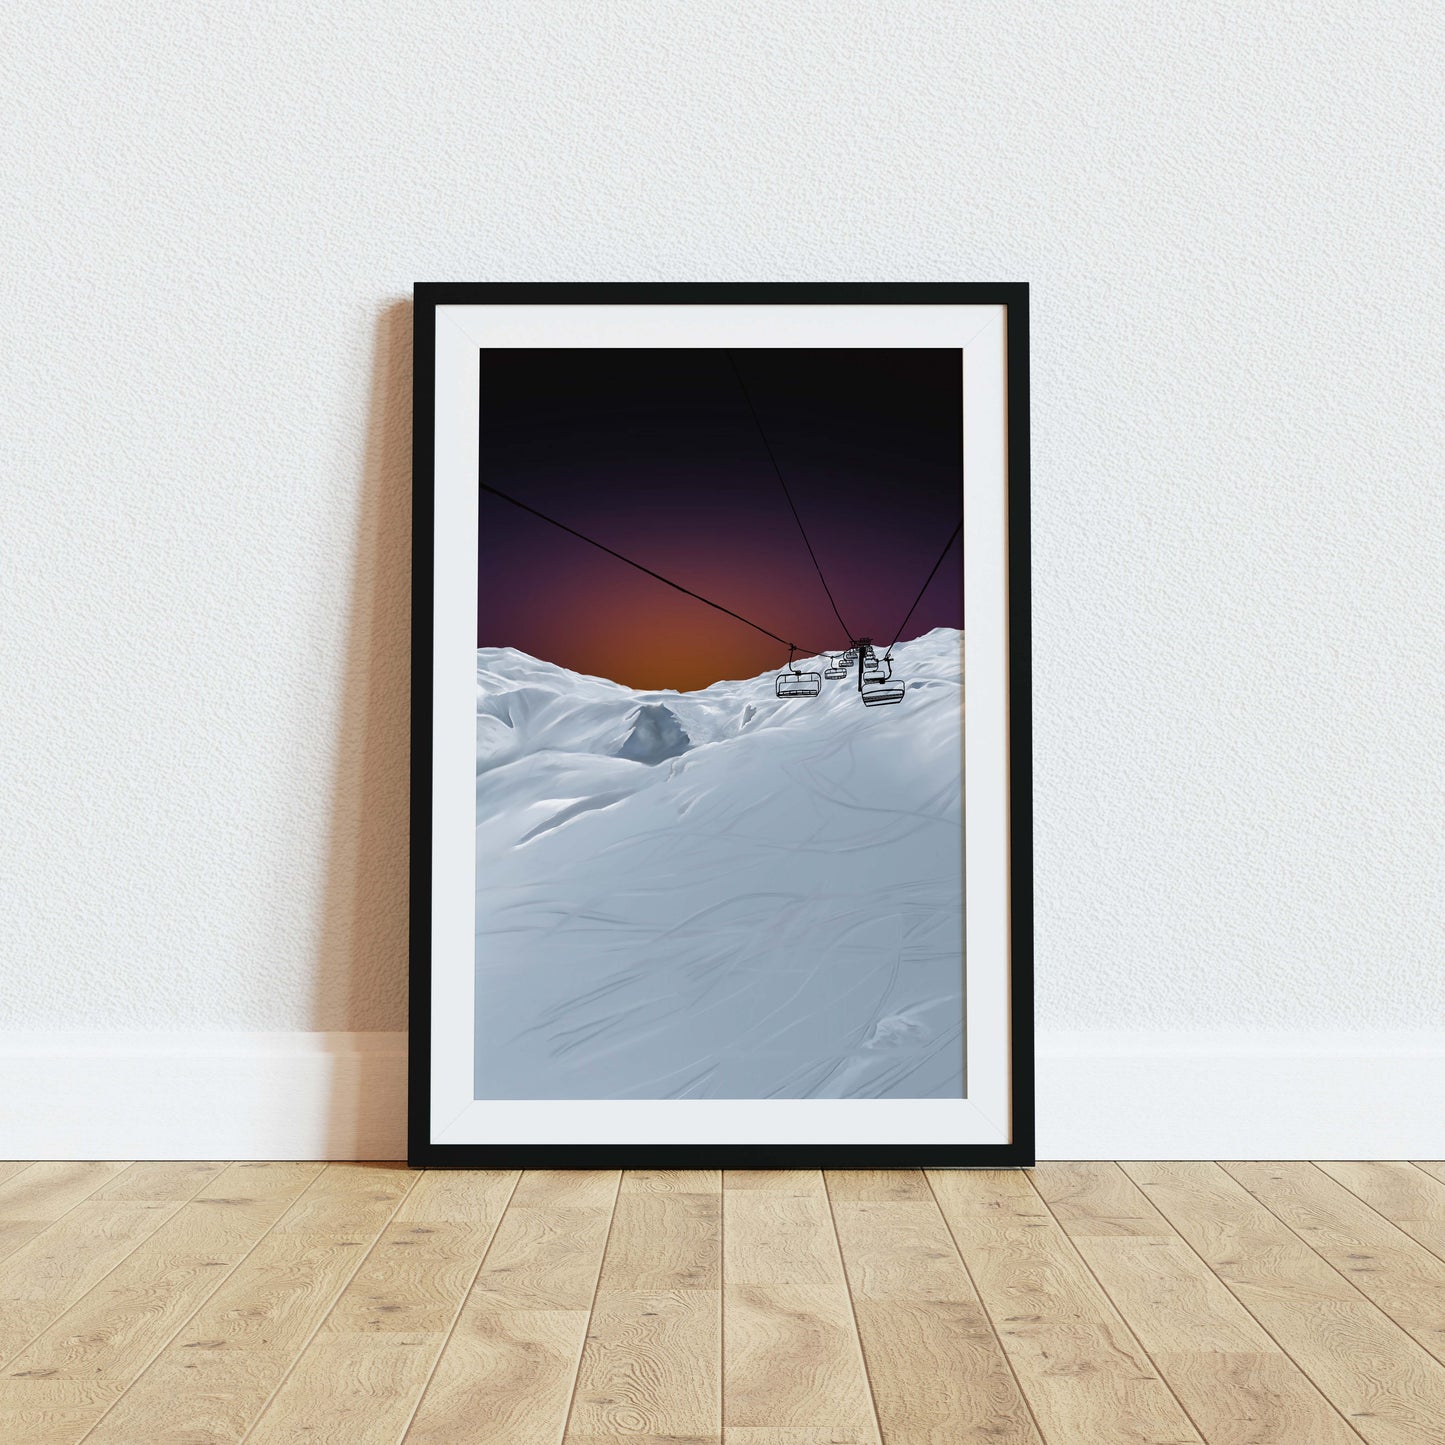 French Alps Ski Lift Art Print